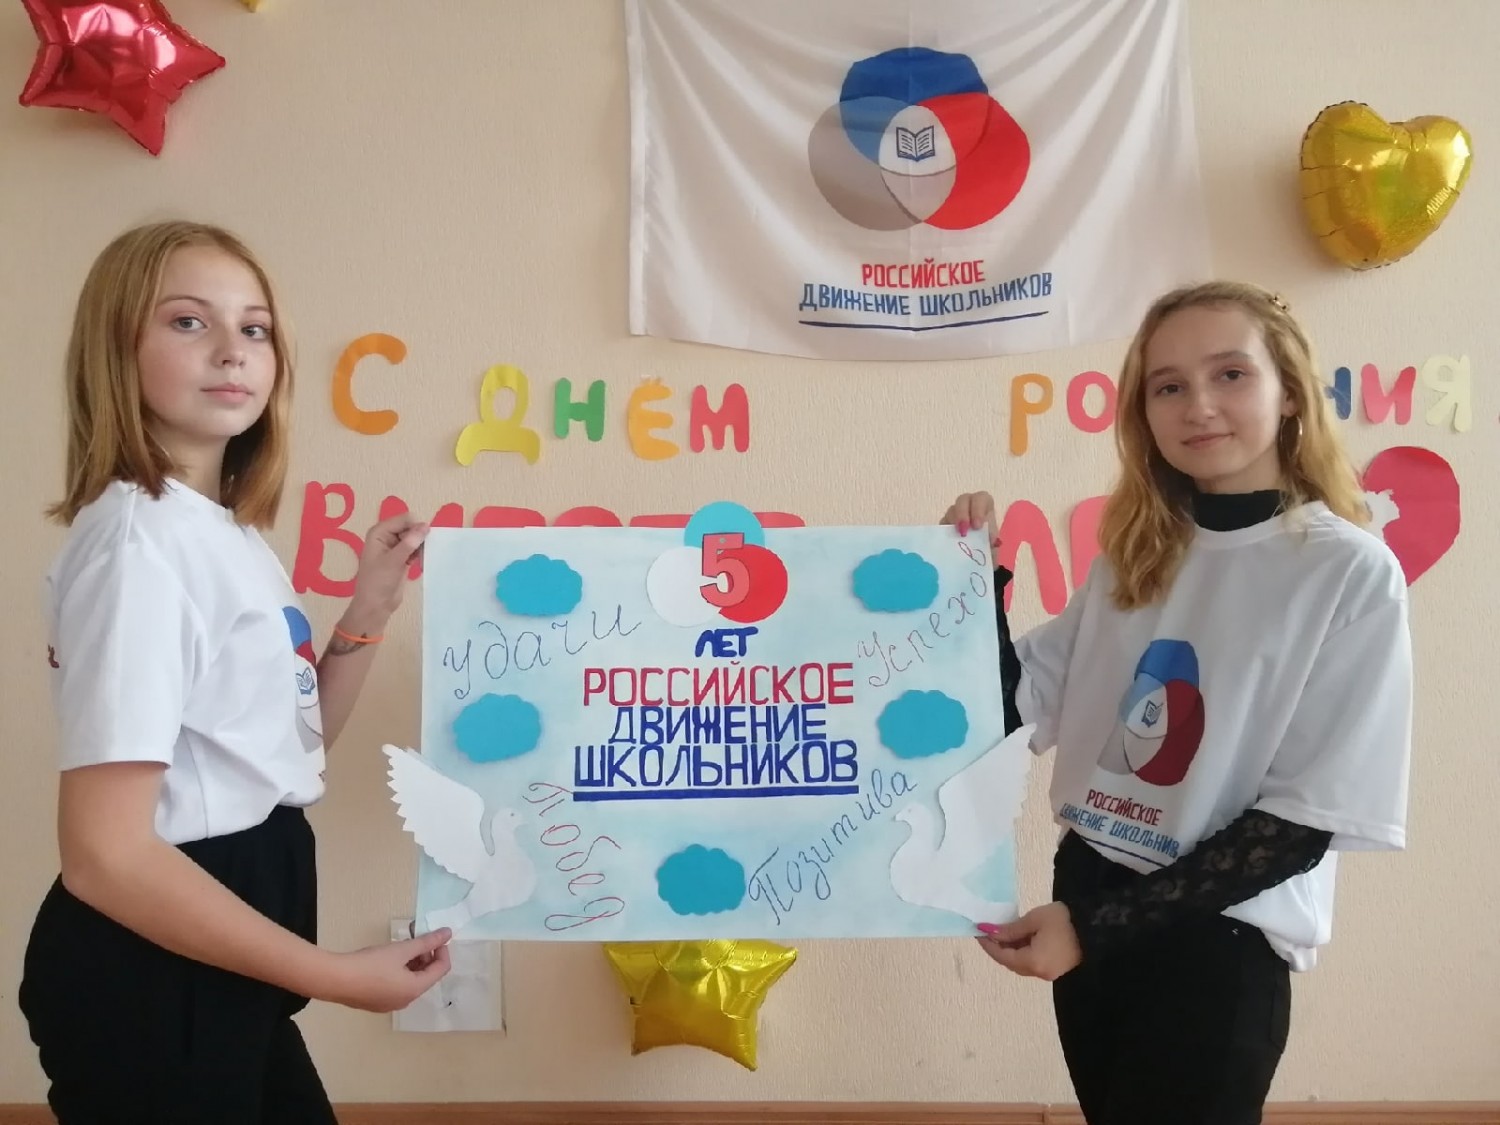 Российское движение школьников поделки своими руками